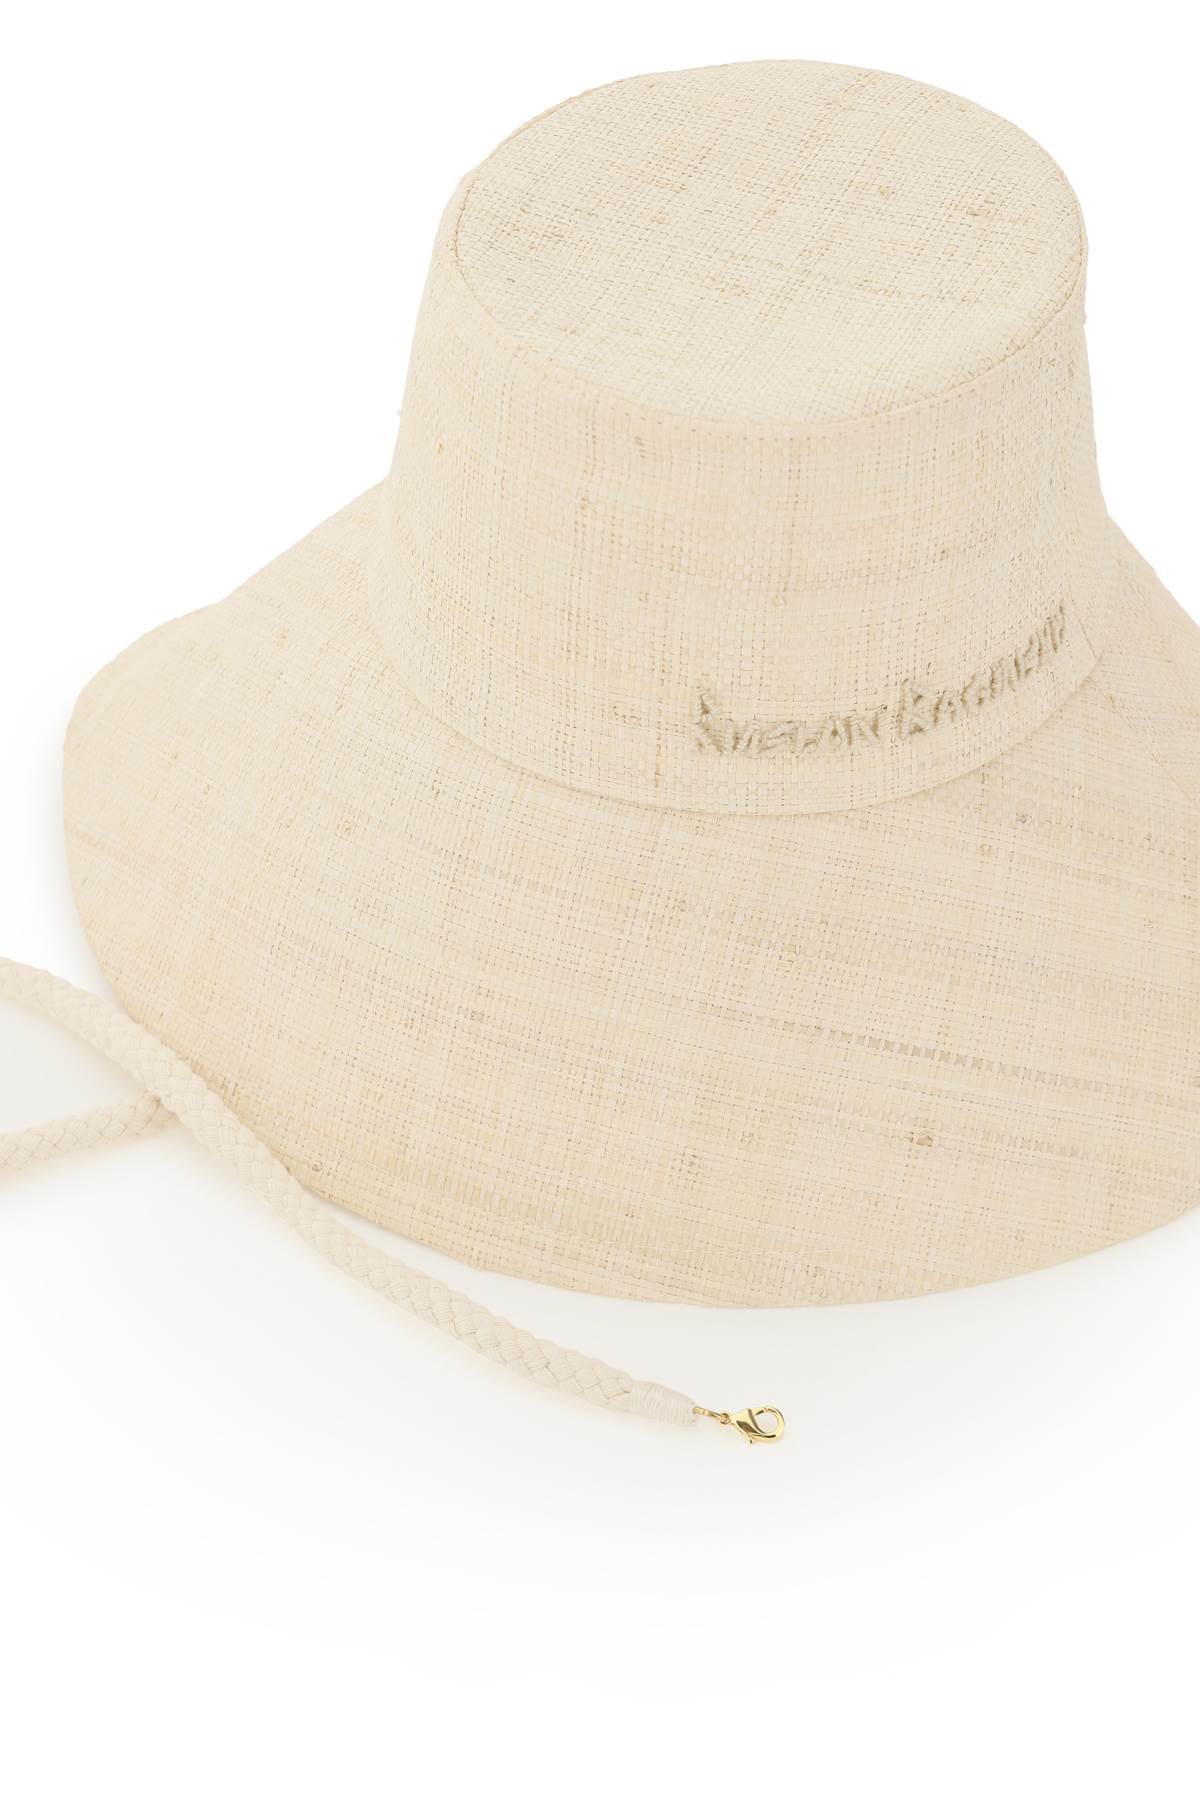 Shop Ruslan Baginskiy Straw Wide Brim Bucket Hat In Natural Straw (beige)